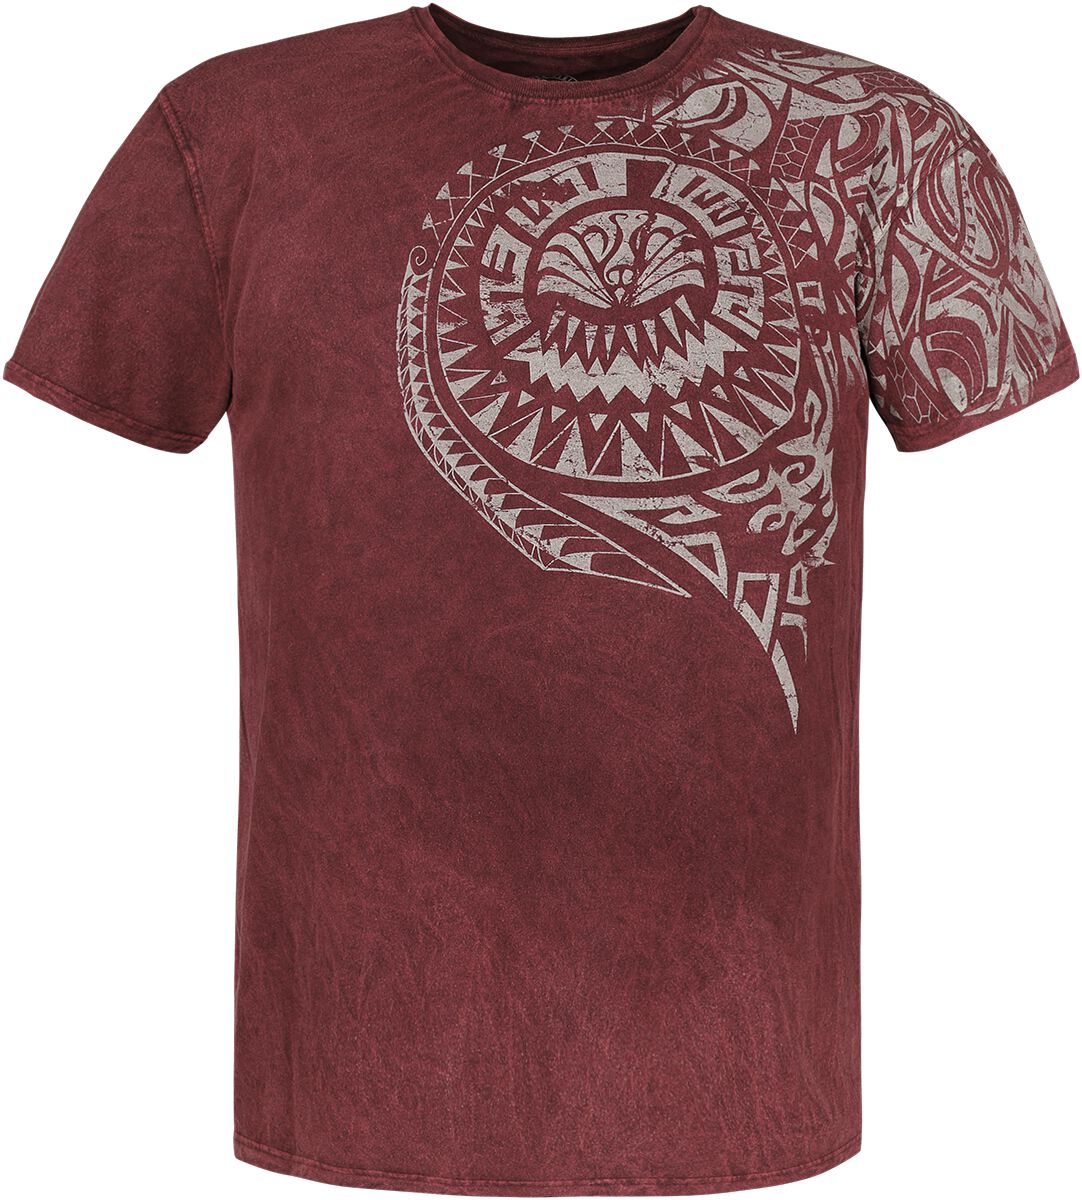 Outer Vision T-Shirt - Burned Tattoo - S bis 4XL - für Männer - Größe 4XL - rot